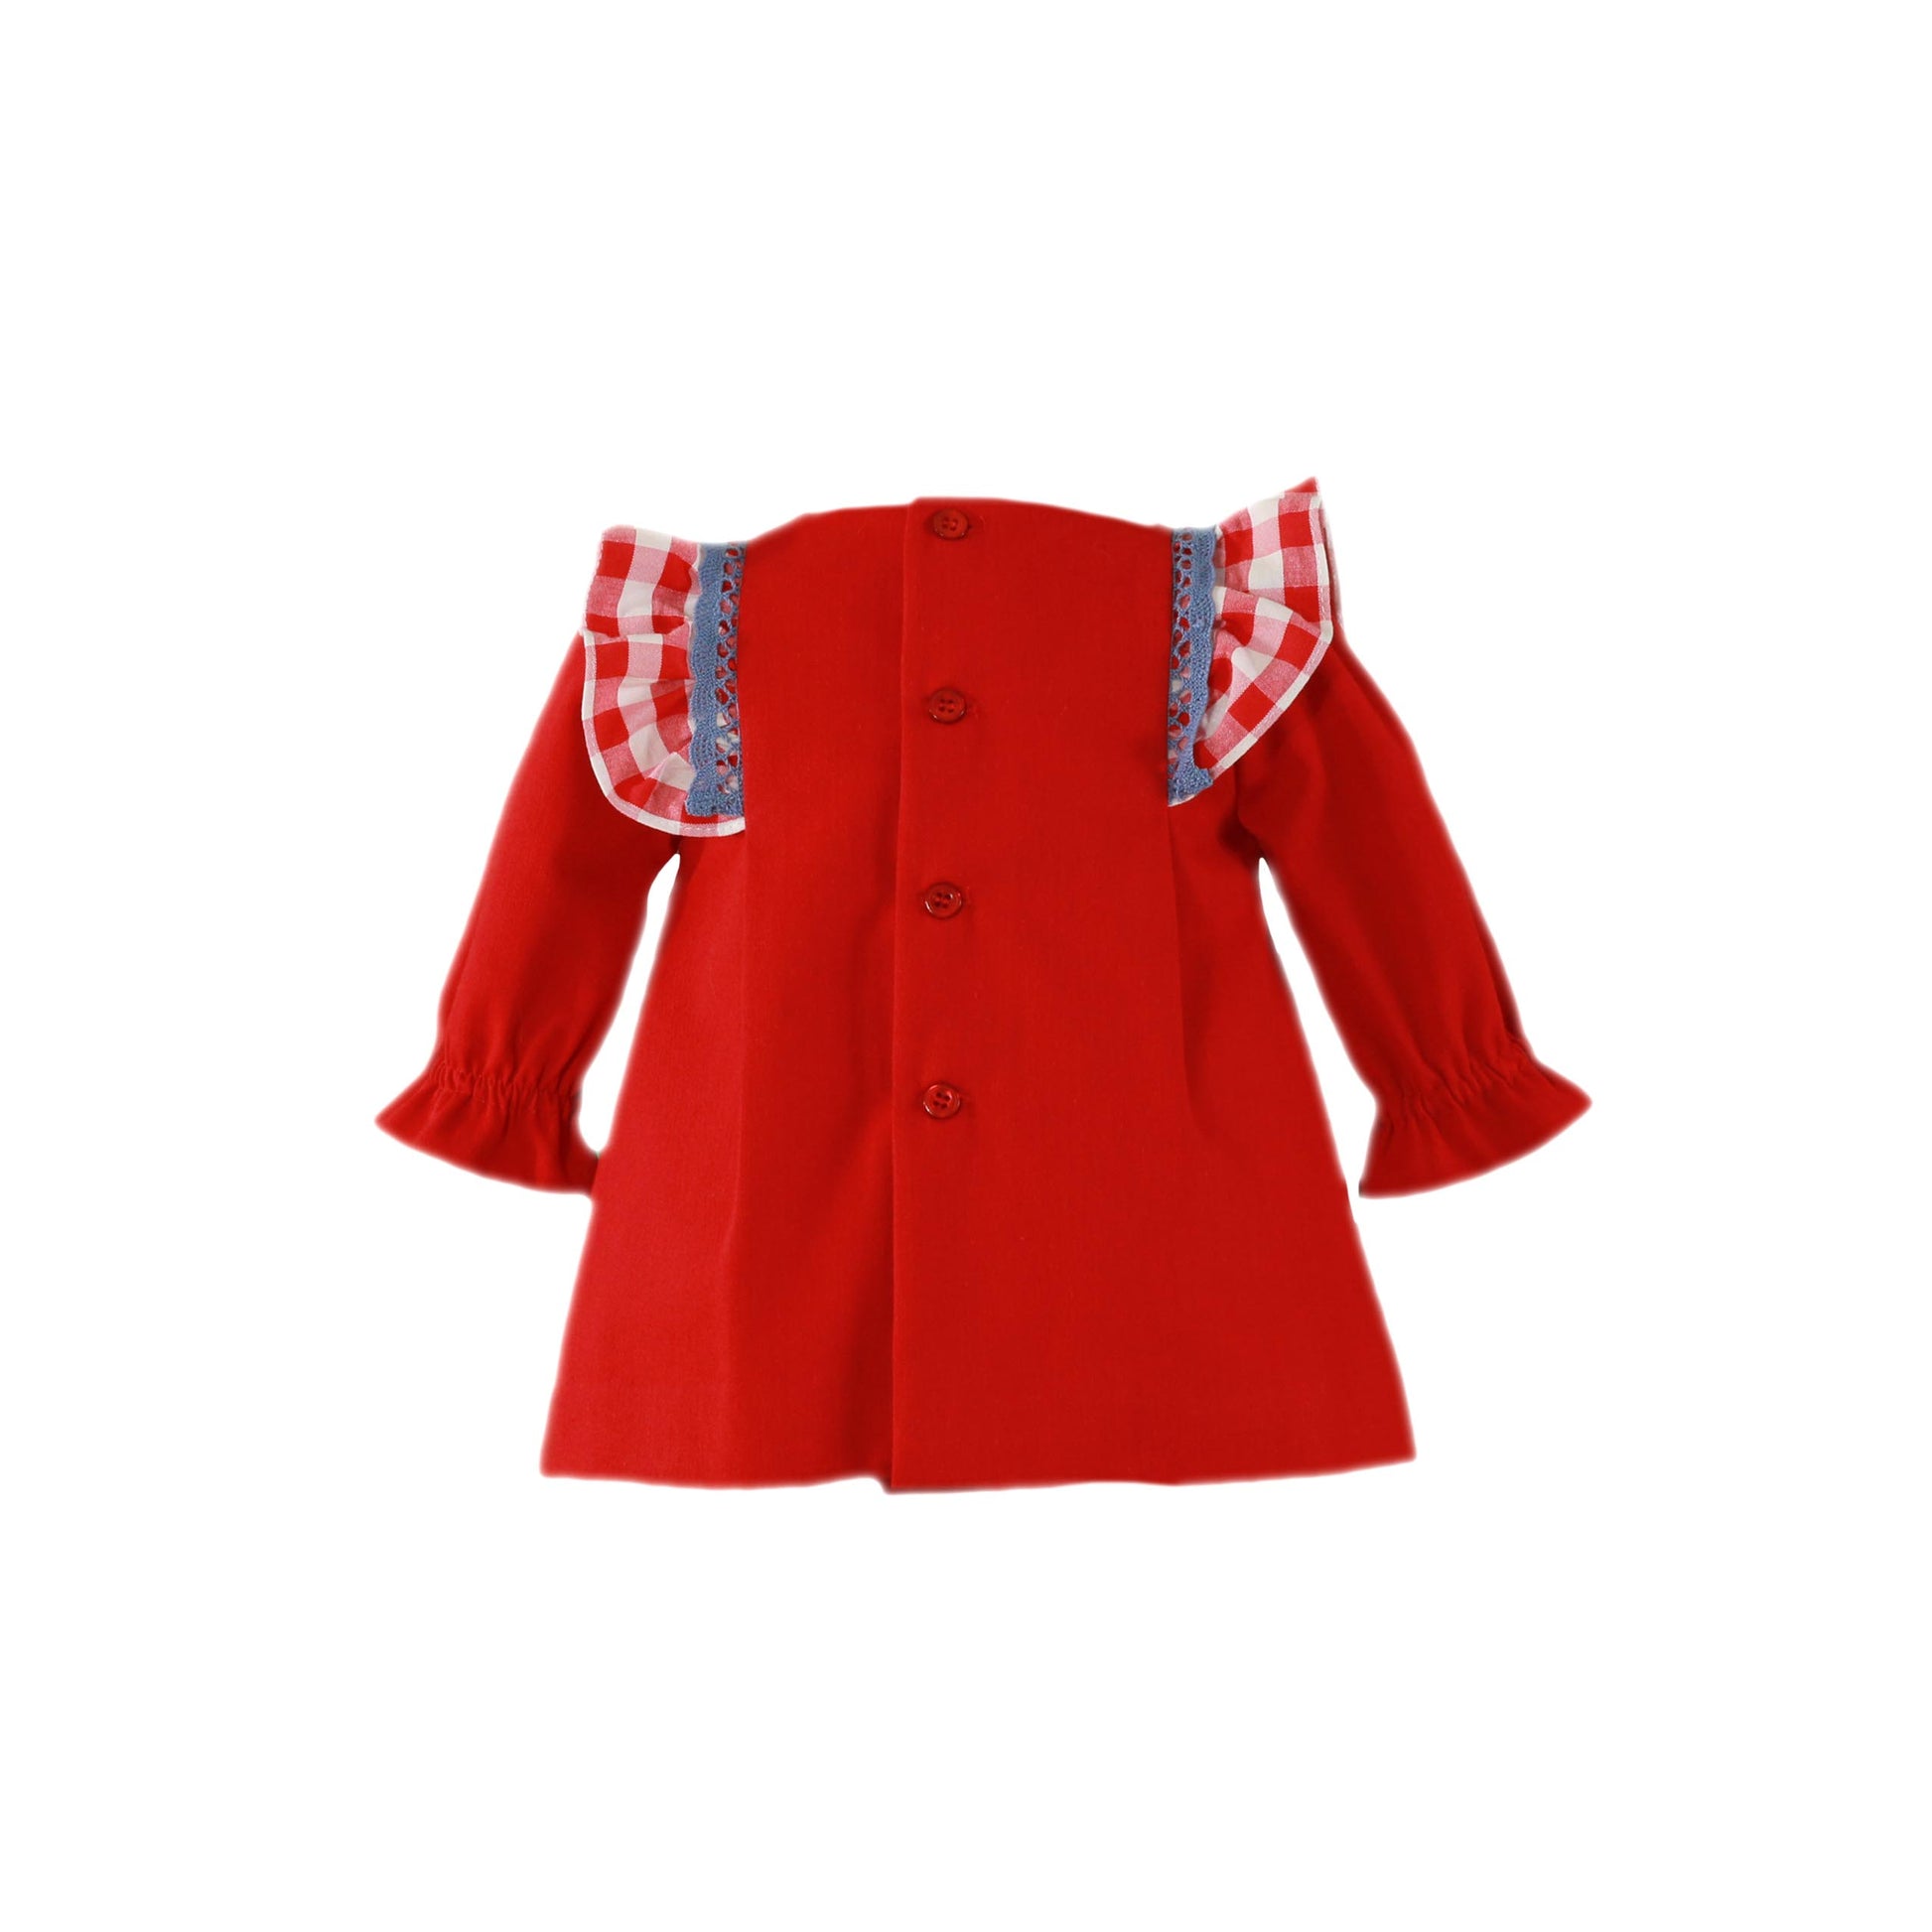 MIRANDA Red Gingham Baby Girls Dress - 32V